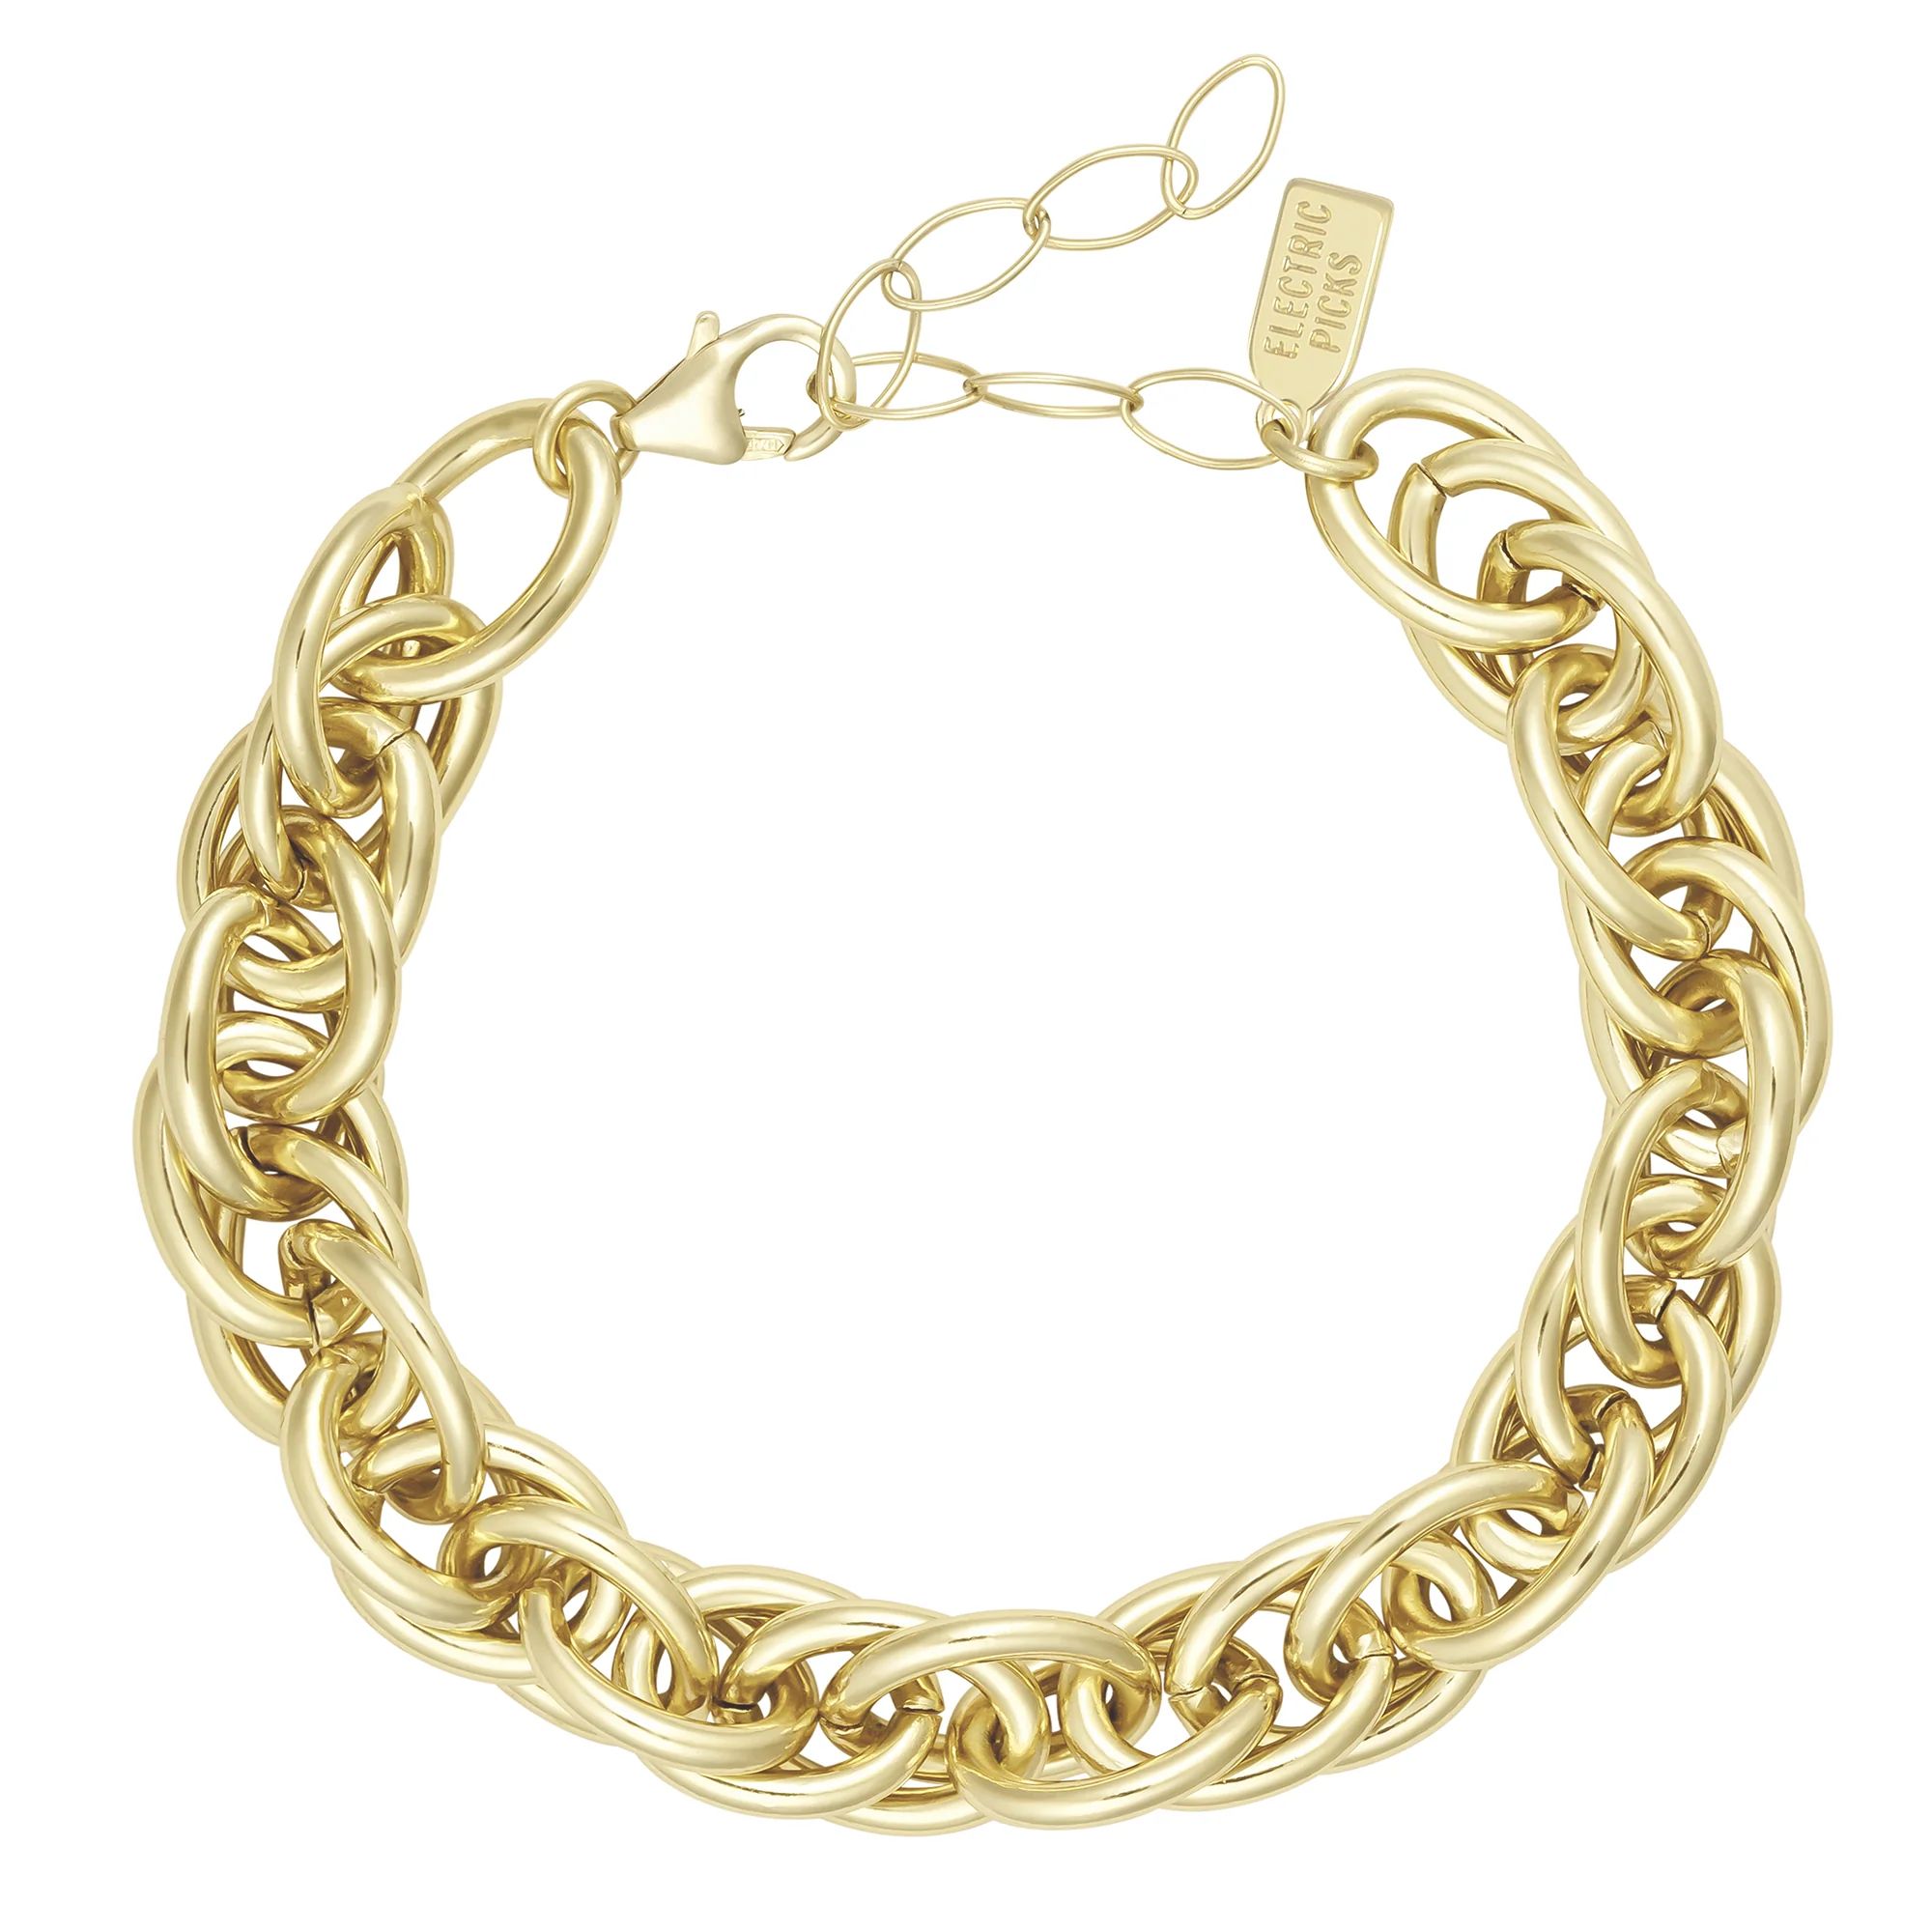 Chain Mail Bracelet | Electric Picks Jewelry